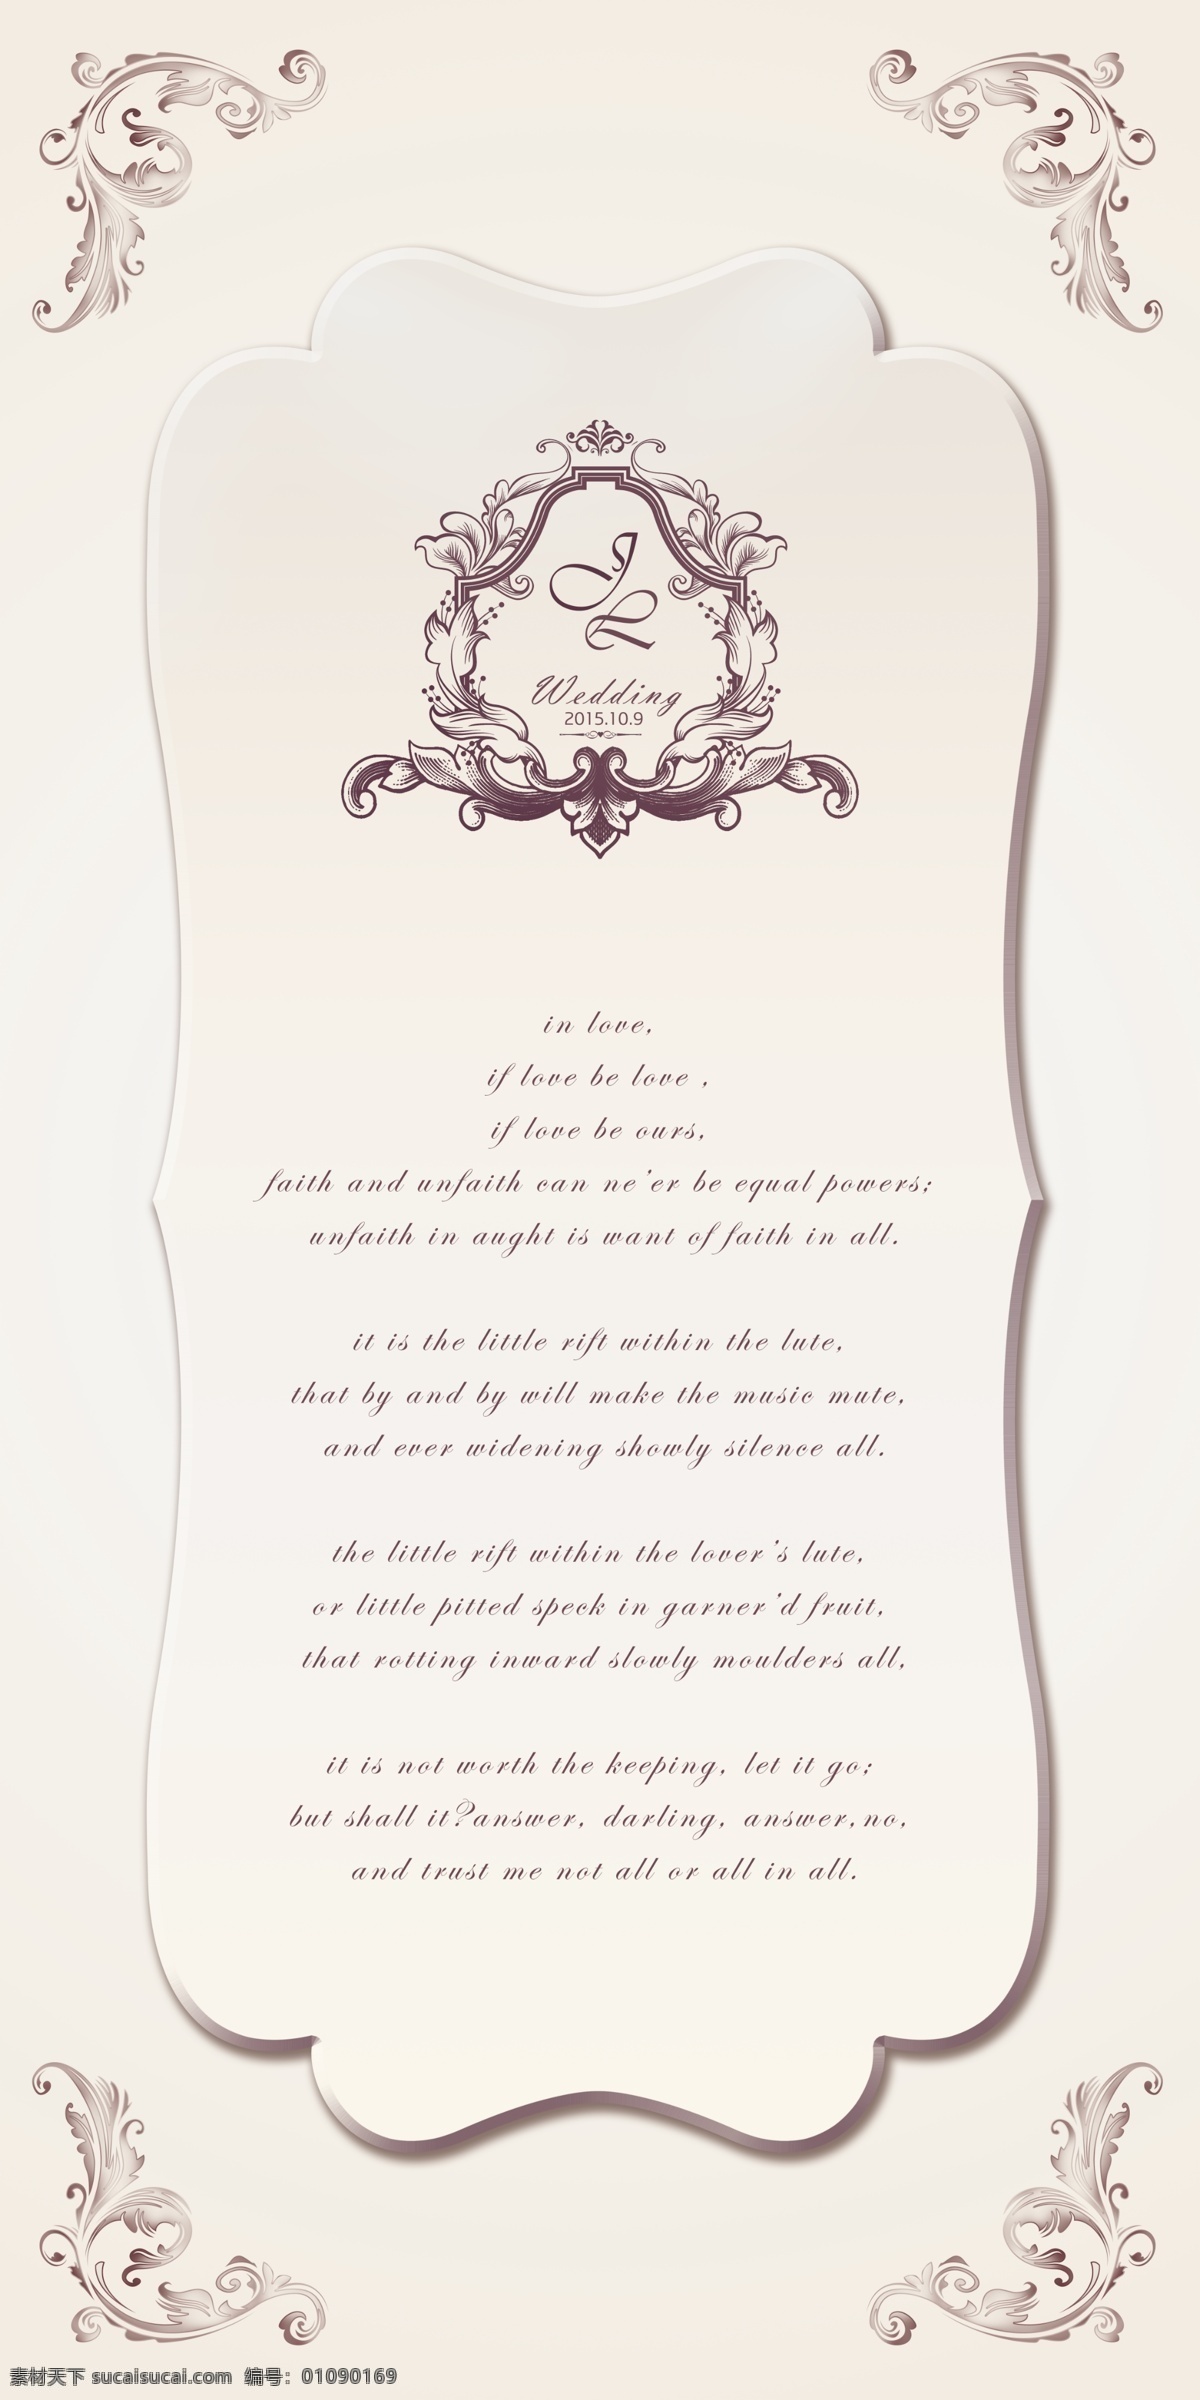 婚礼宣言背景 婚庆 婚礼 展板 背景 欧式 花纹 情诗 logo 结婚 新人 宣言 边角 边框 分层